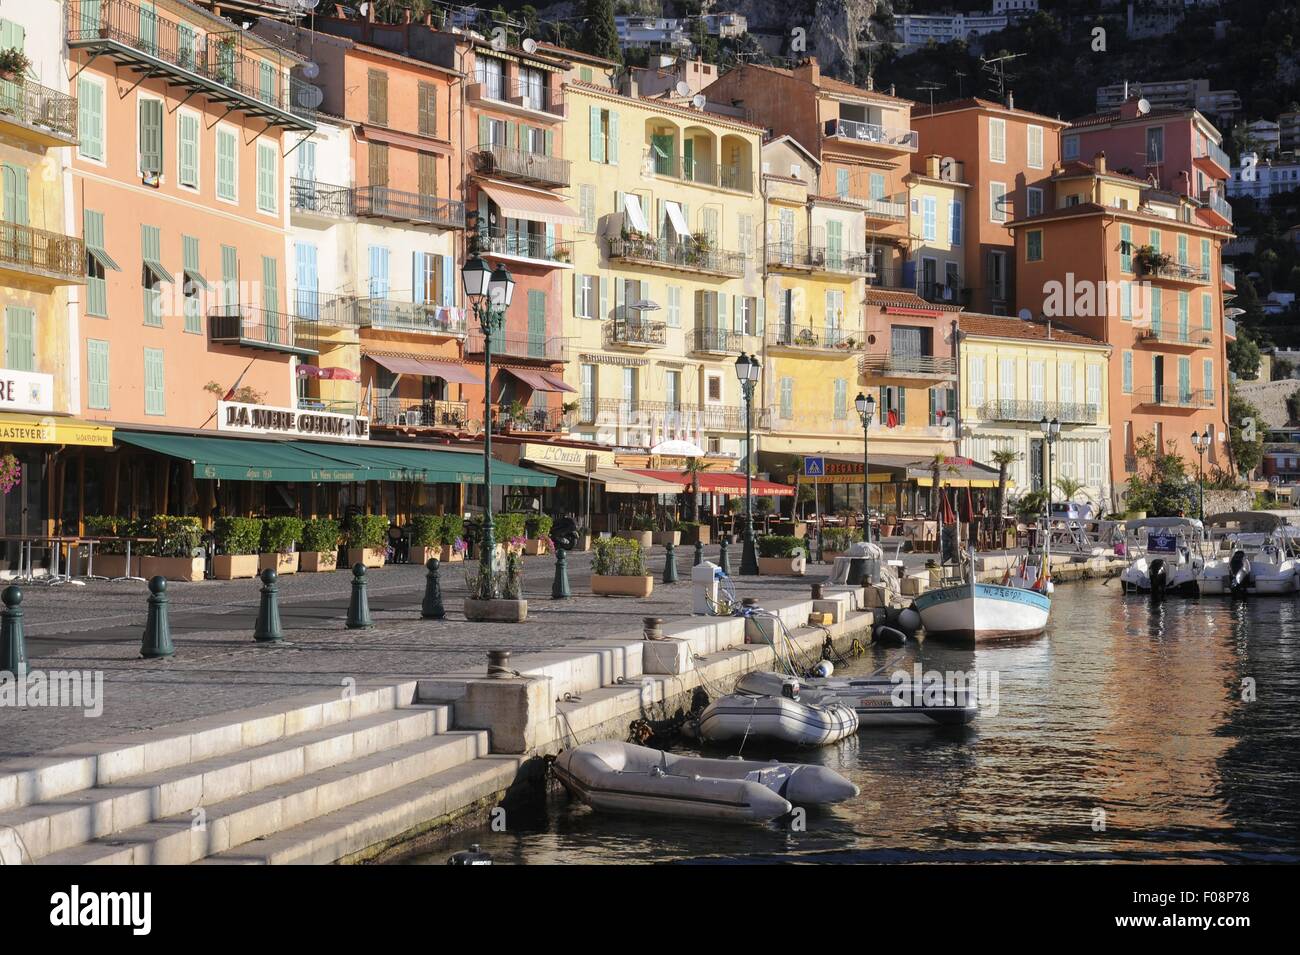 France, Cote d'Azur, Villefranche sur Mer Stock Photo